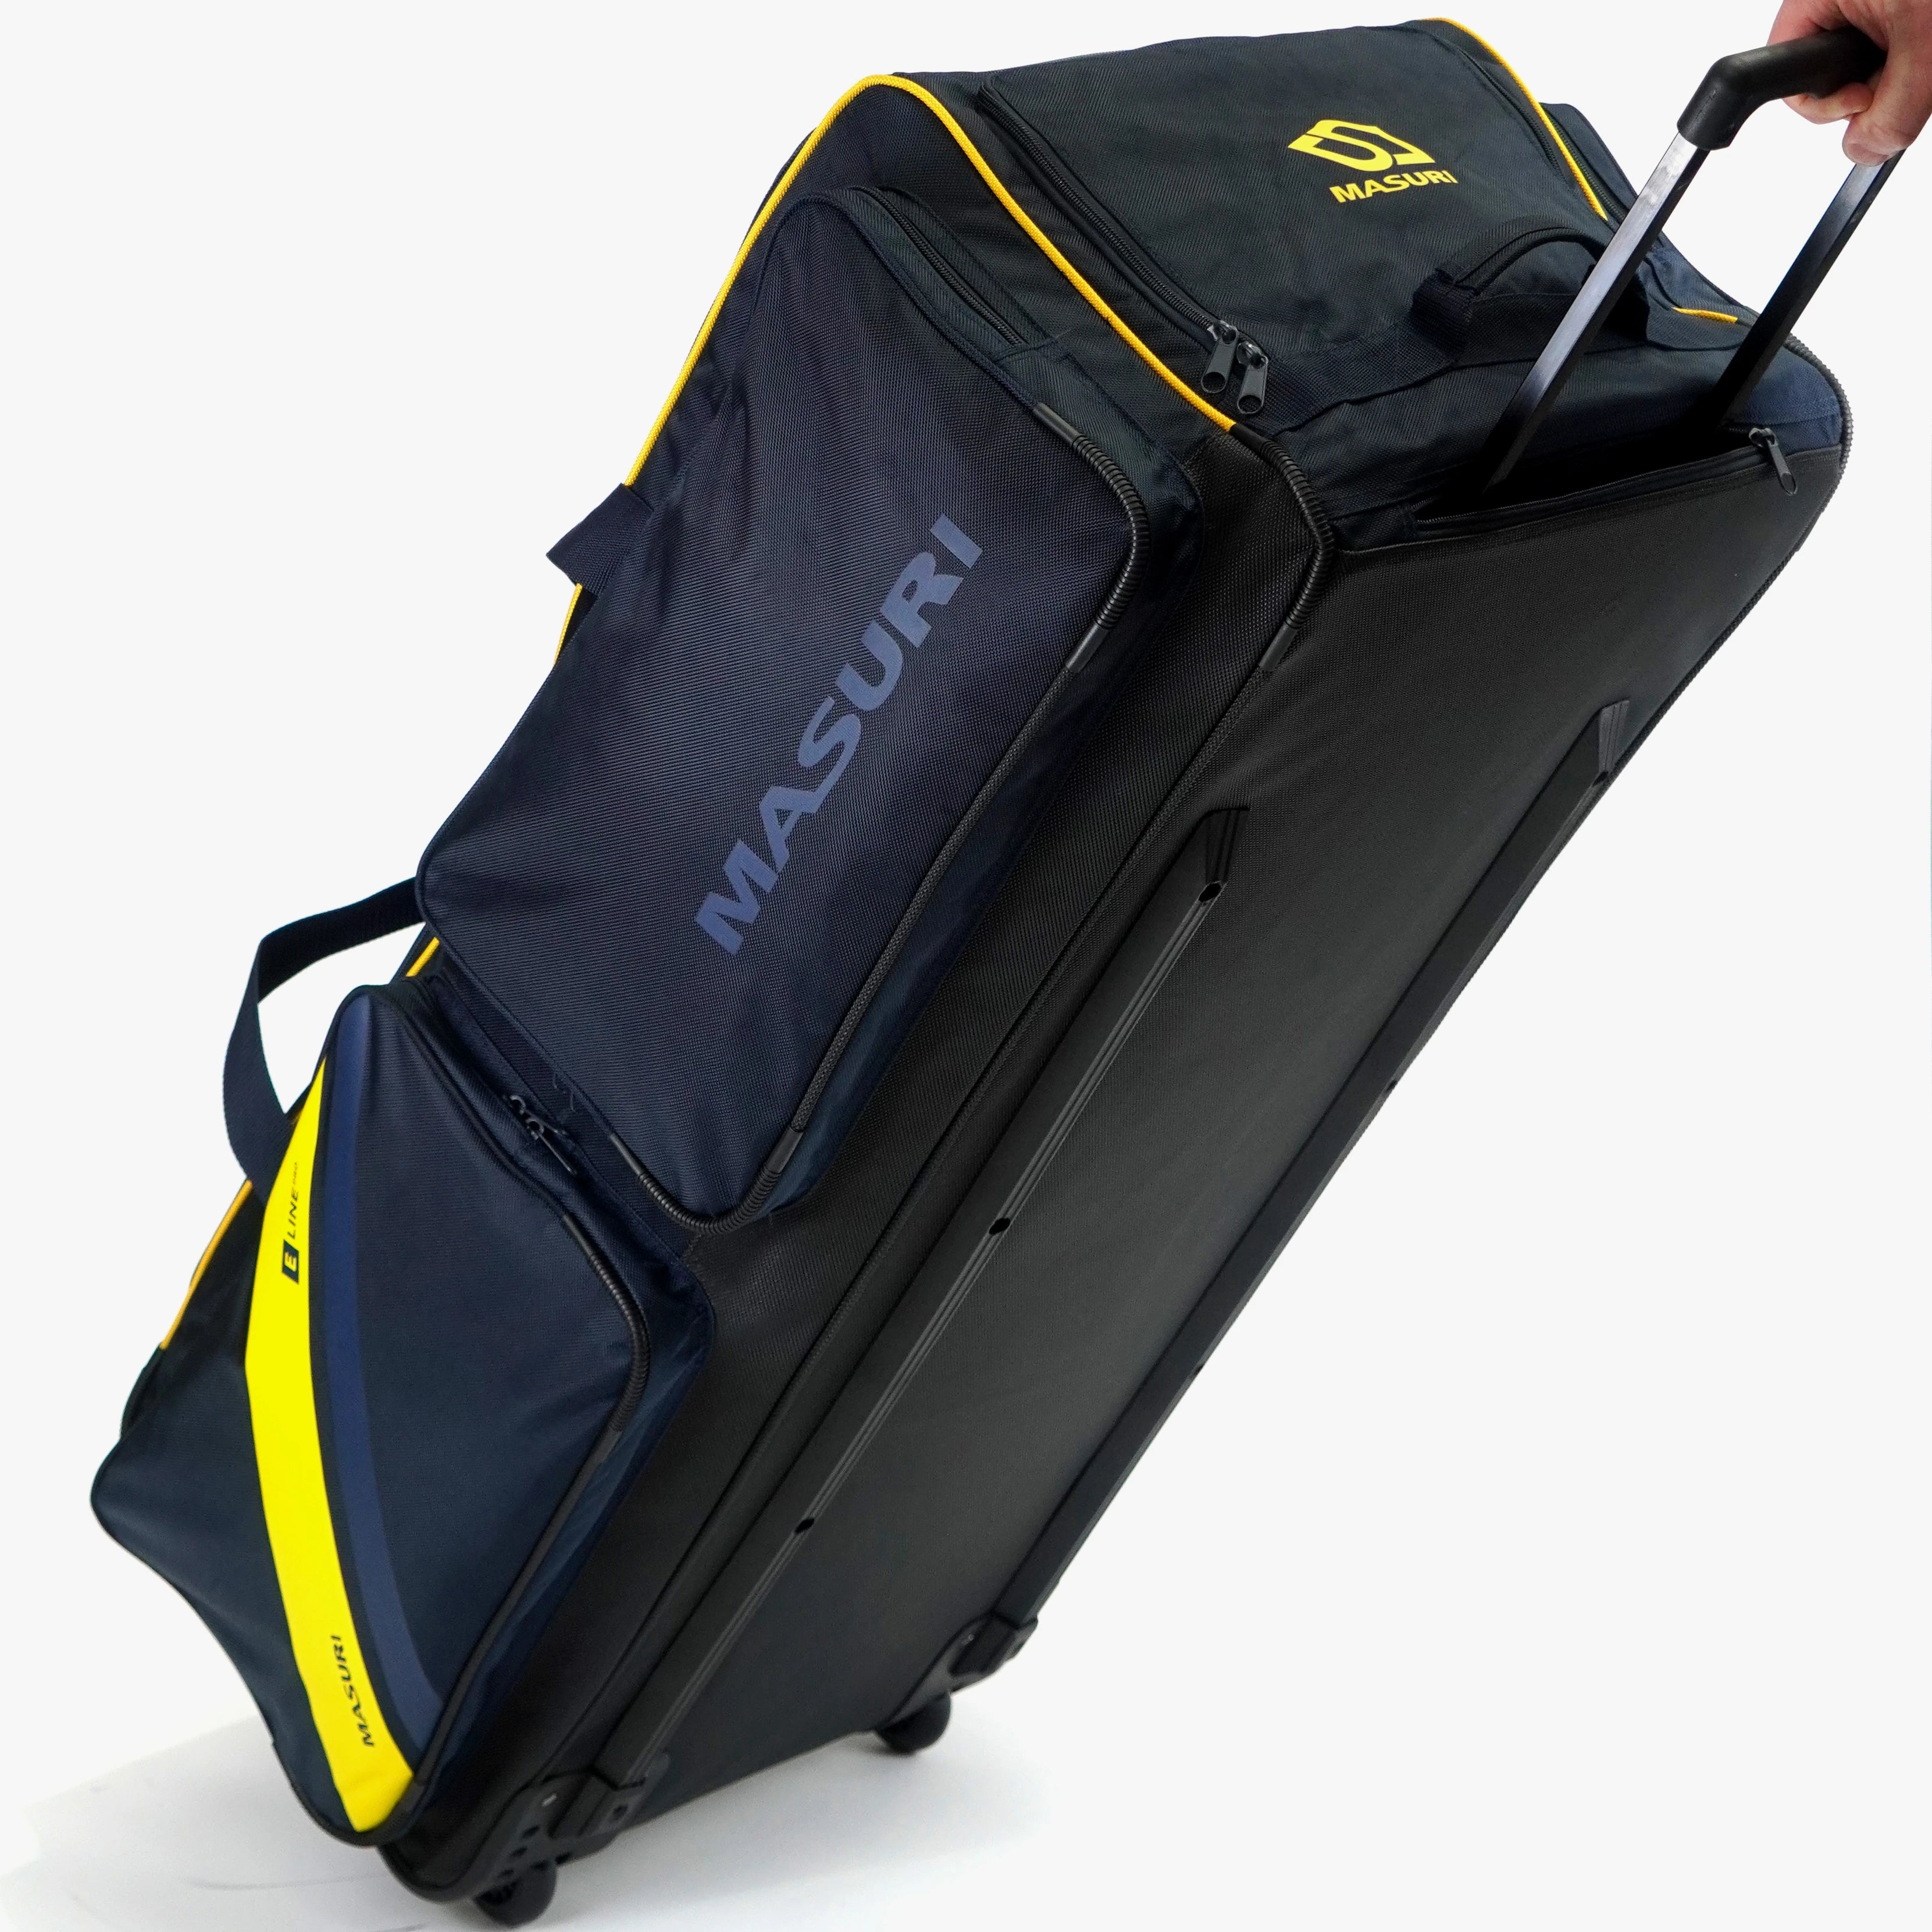 Masuri E line Pro Wheelie Cricket Kit Bag